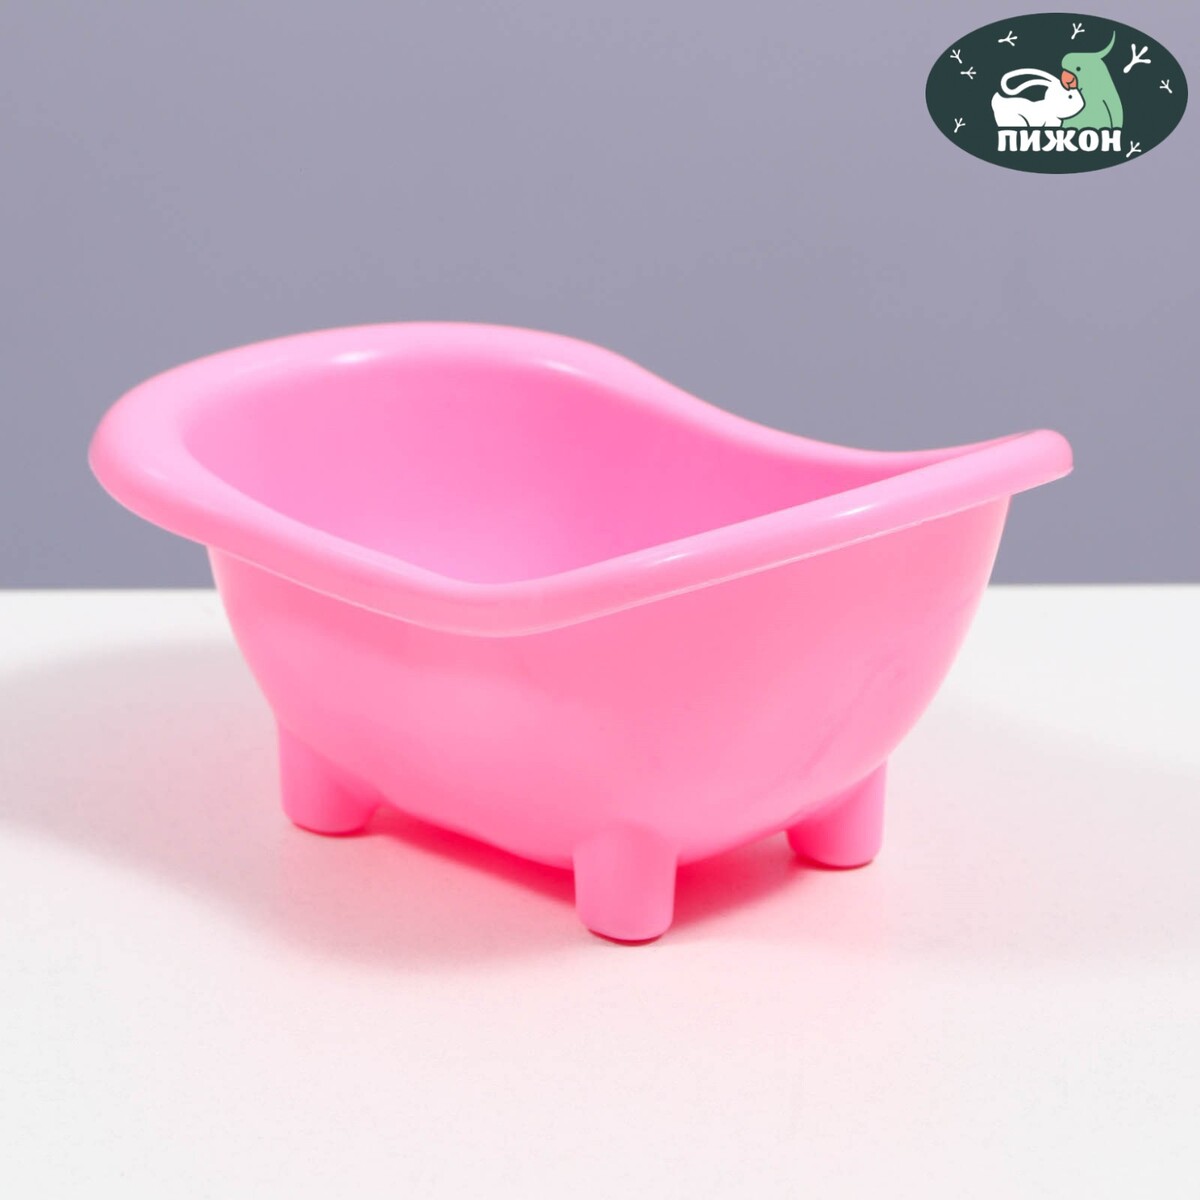 Ванночка для хомяков, 15,5 х 8,5 см, розовая beurer гидромассажная ванночка для ног fb21